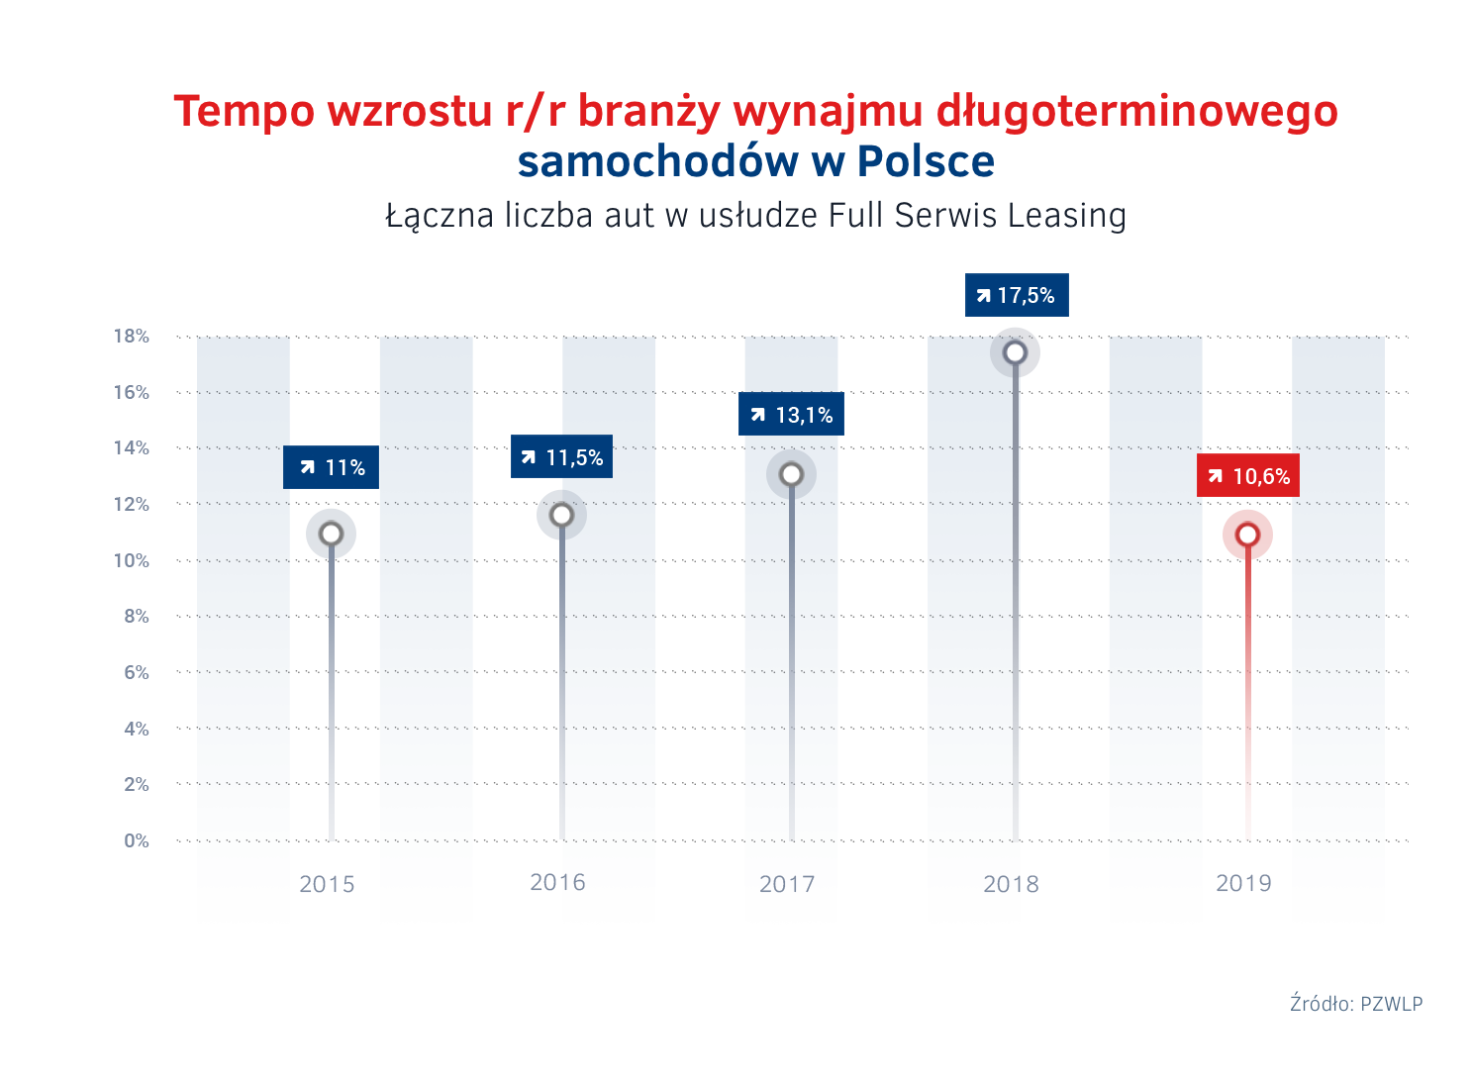 Tempo wzrostu branży wynajmu długoterminowego samochodów w Polsce